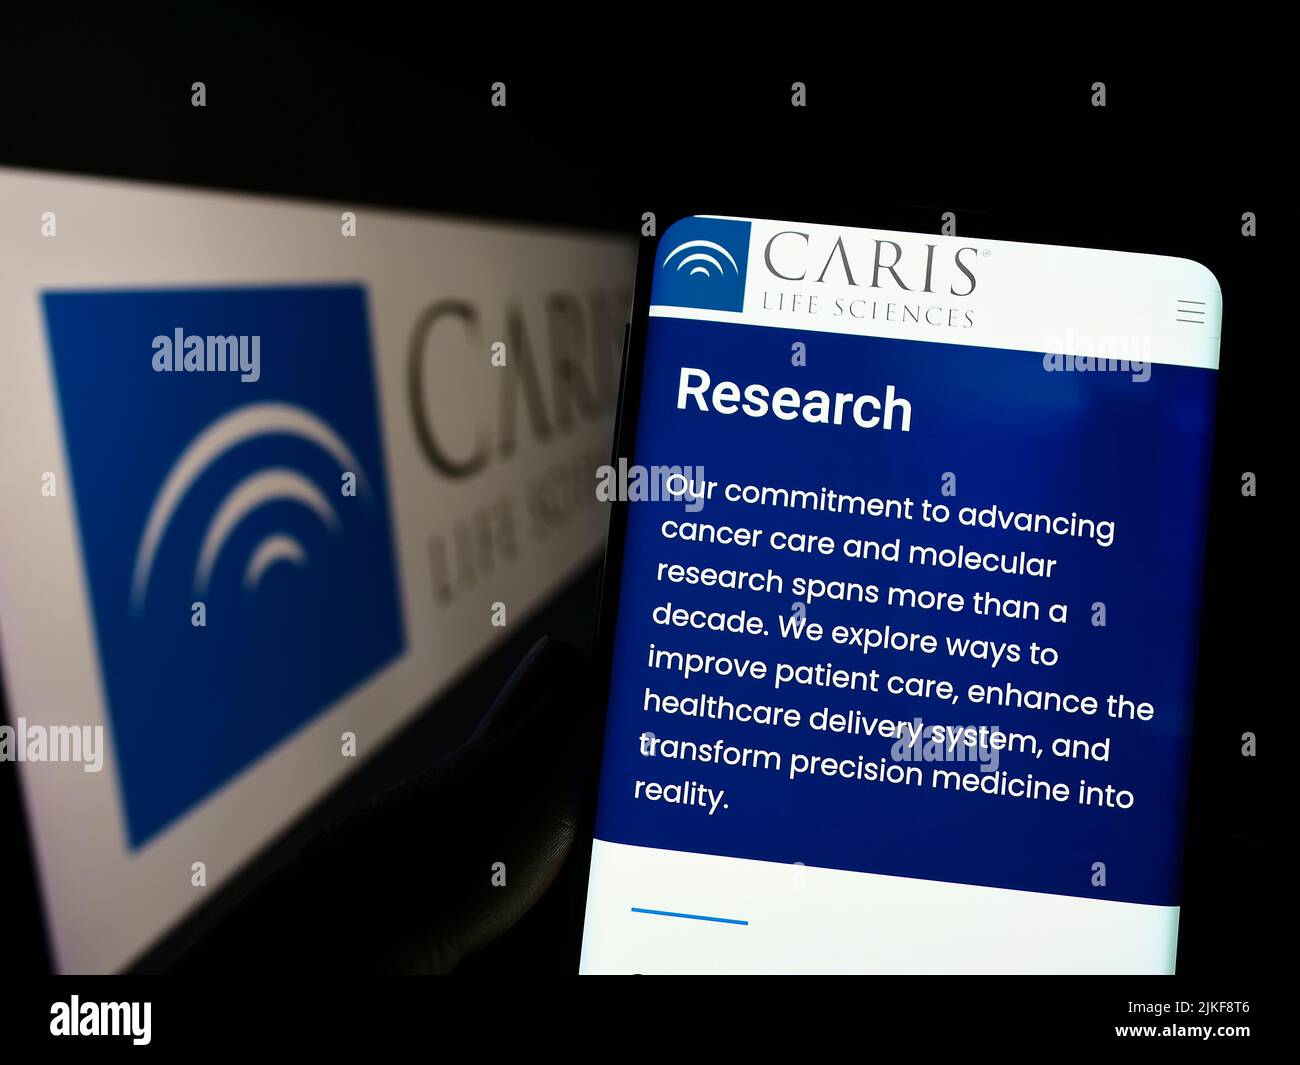 Personne tenant un téléphone portable avec le site Internet de la société américaine de biotechnologie CARIS Life Sciences à l'écran avec logo. Concentrez-vous sur le centre de l'écran du téléphone. Banque D'Images